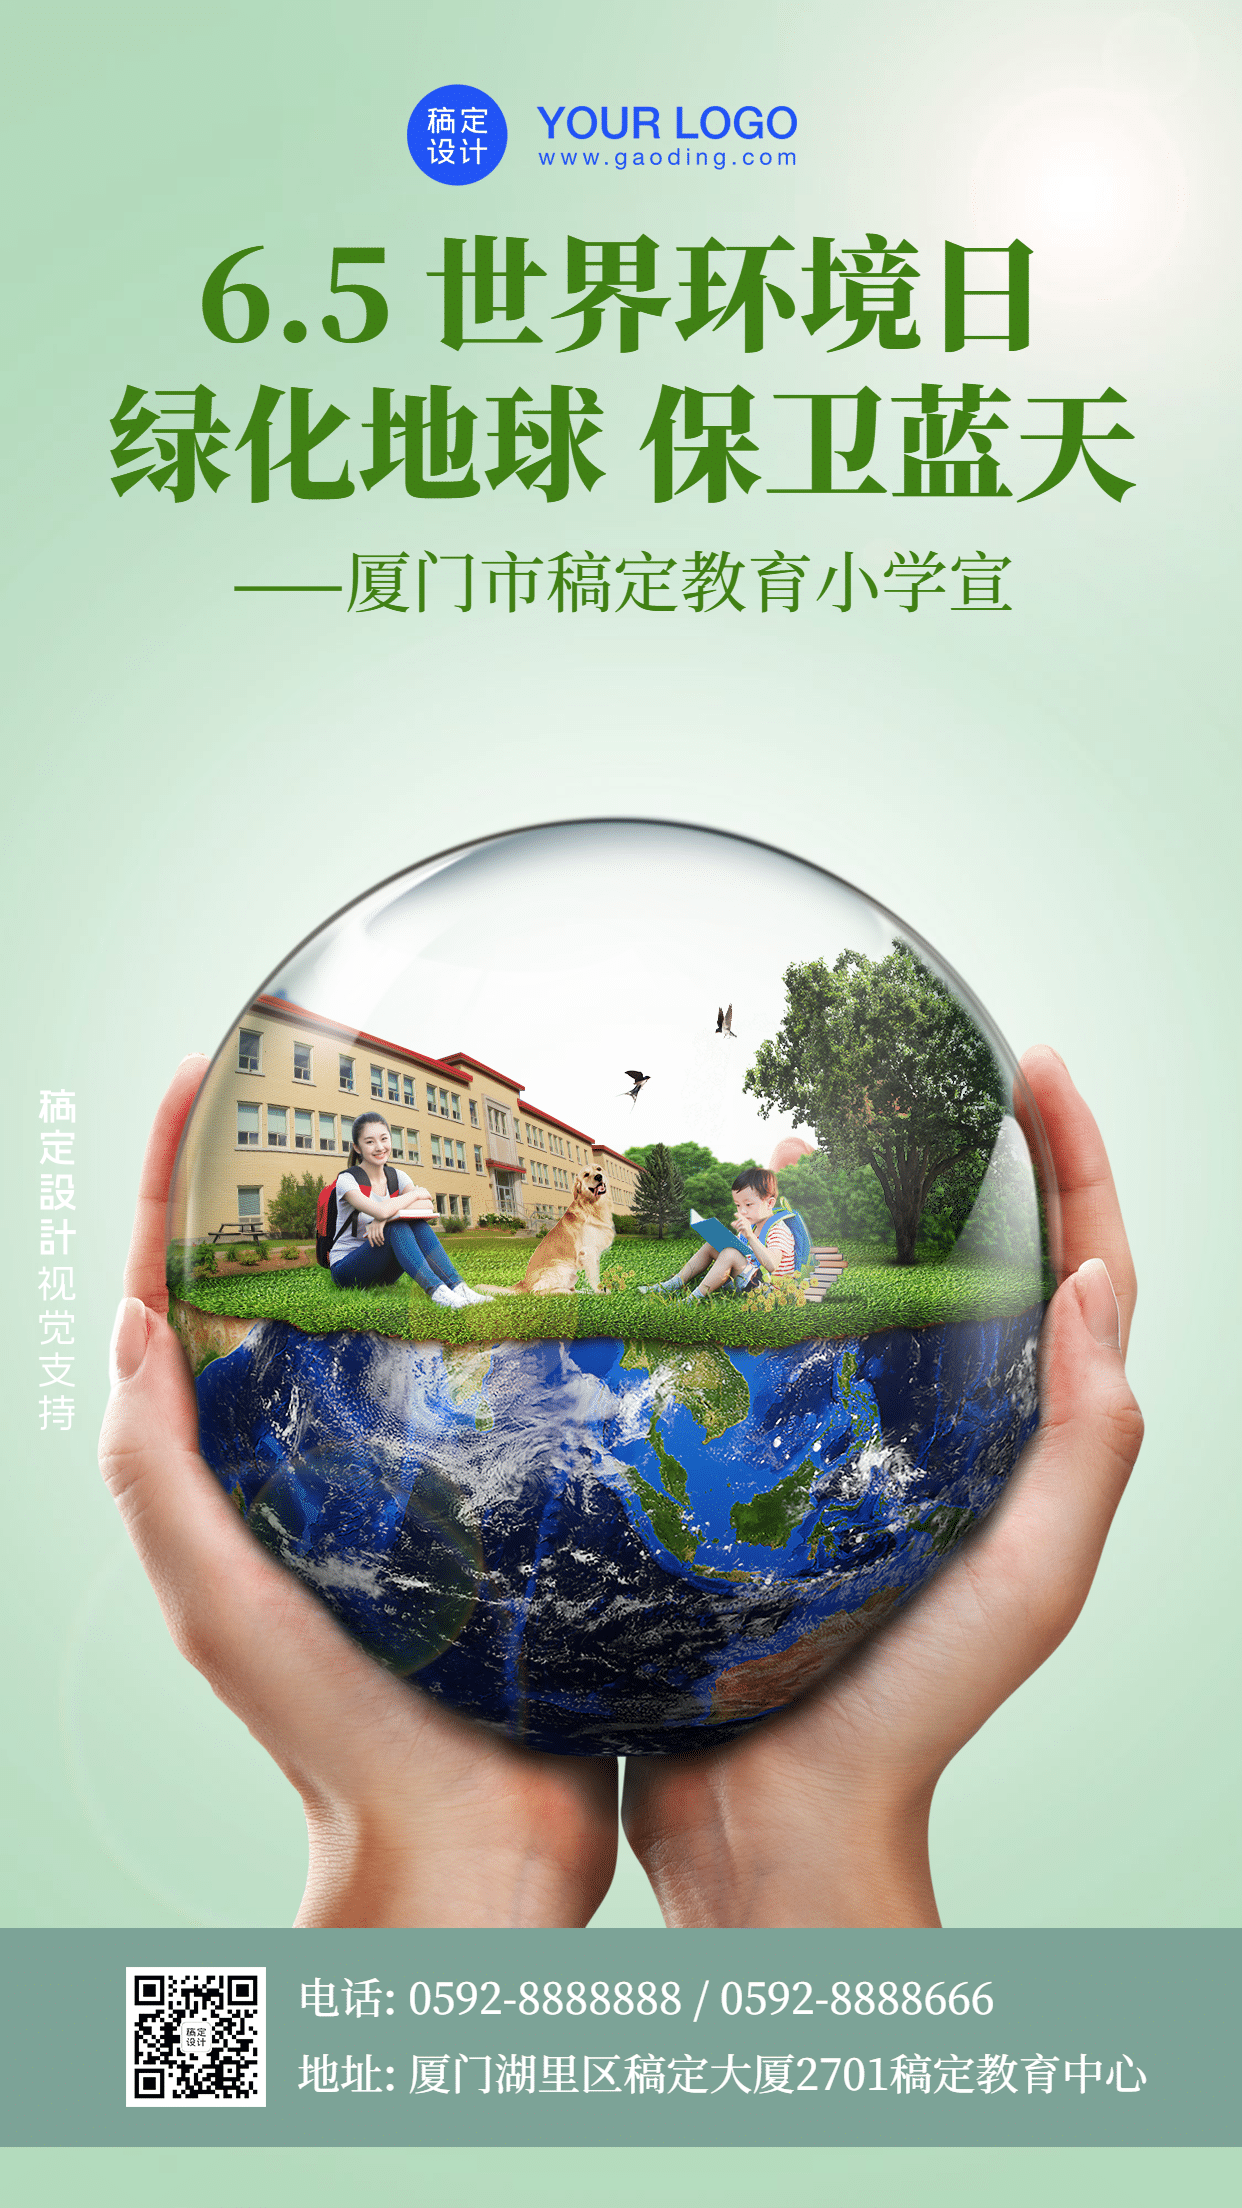 世界环境日校园宣传海报预览效果